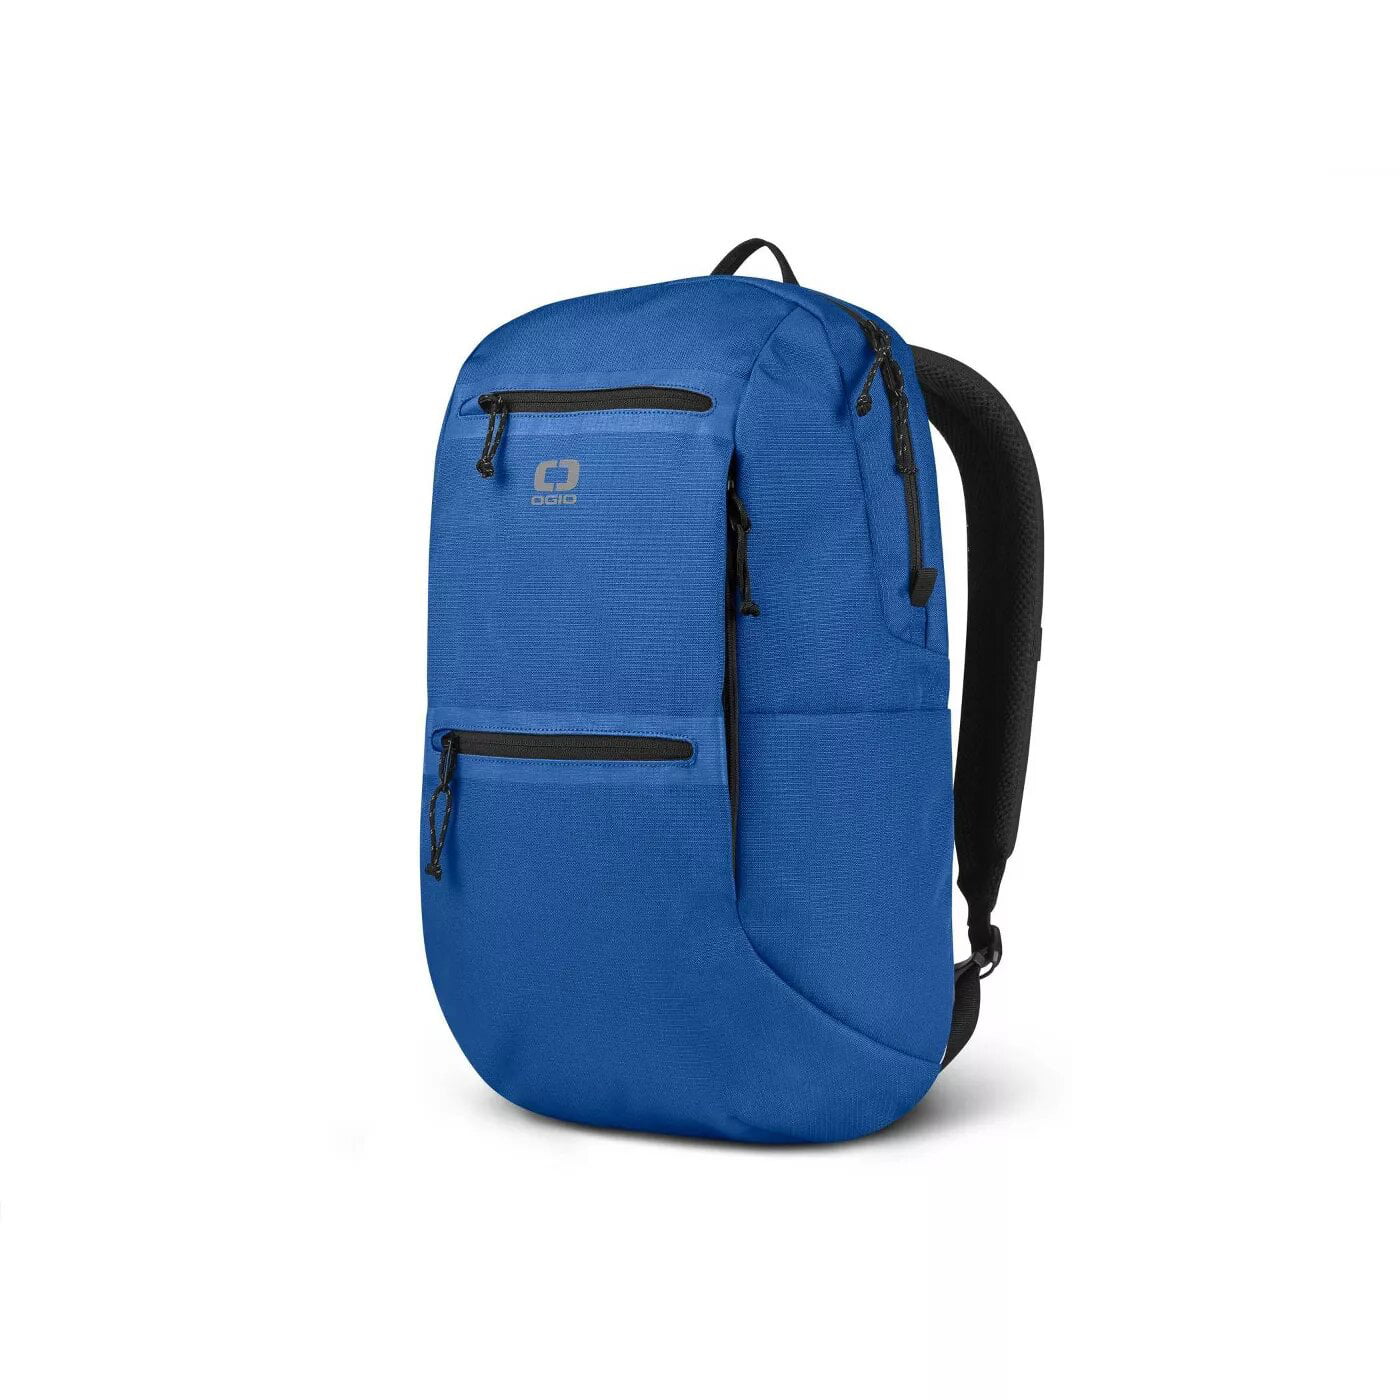 AHOMY Canvas Sports Gym Bag Marble Pattern Travel Shoulder Bag